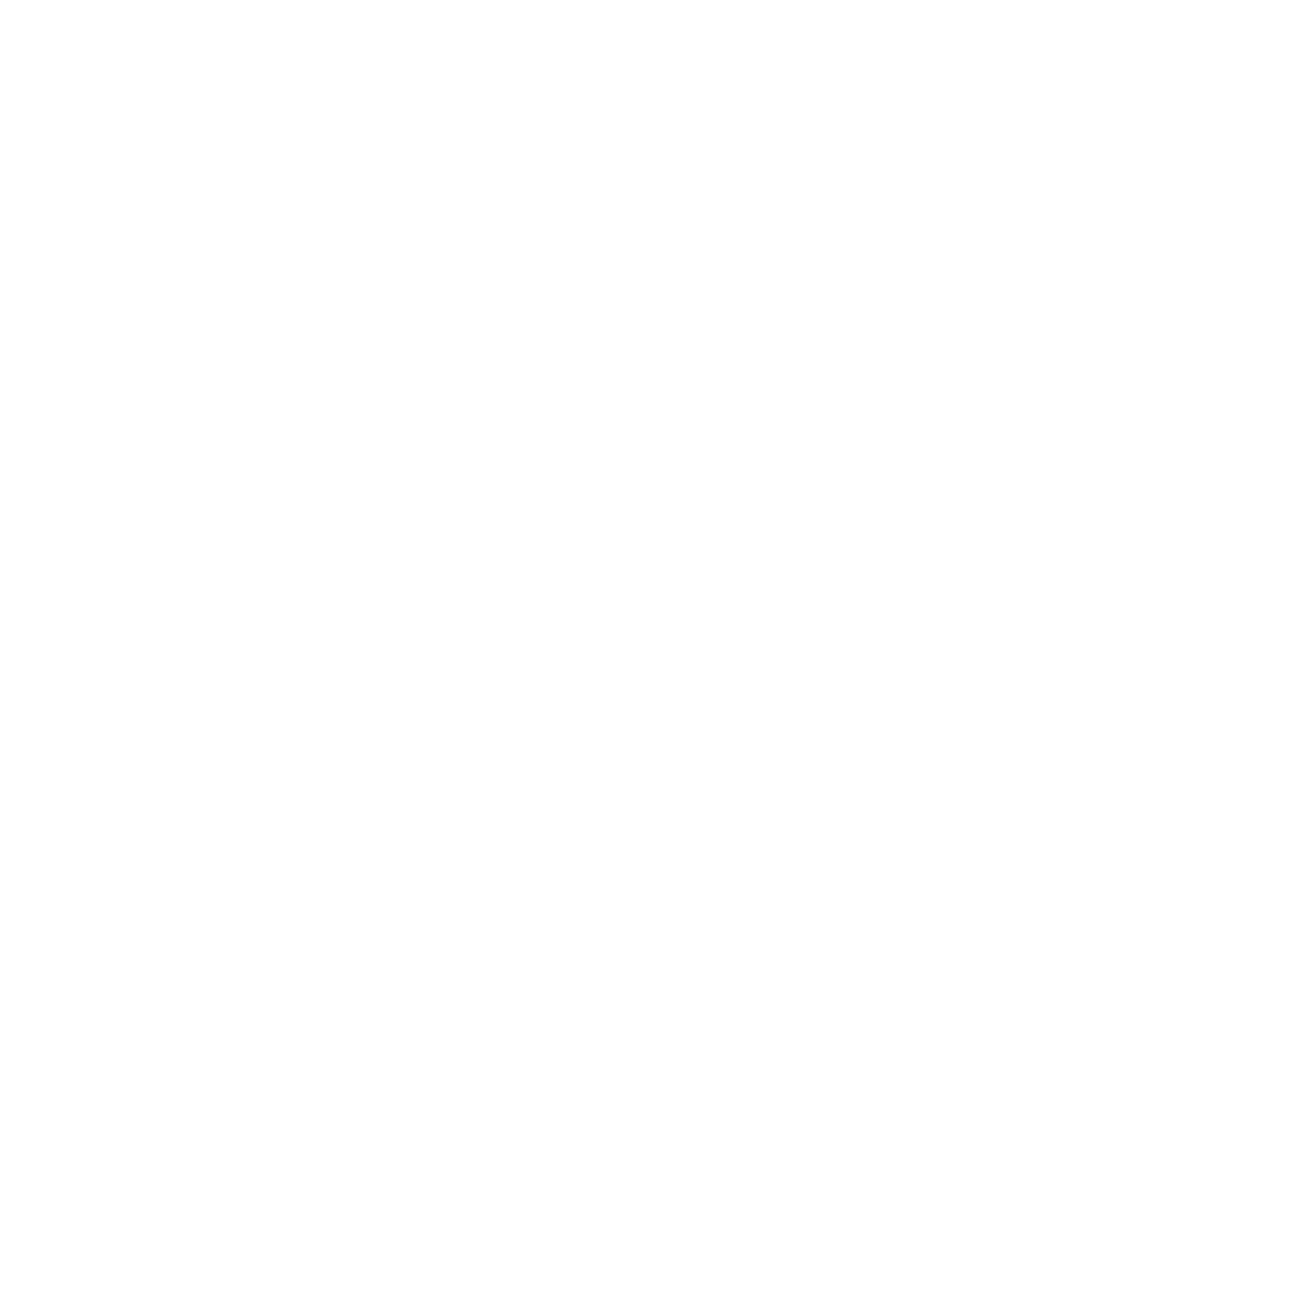 Reachout Church